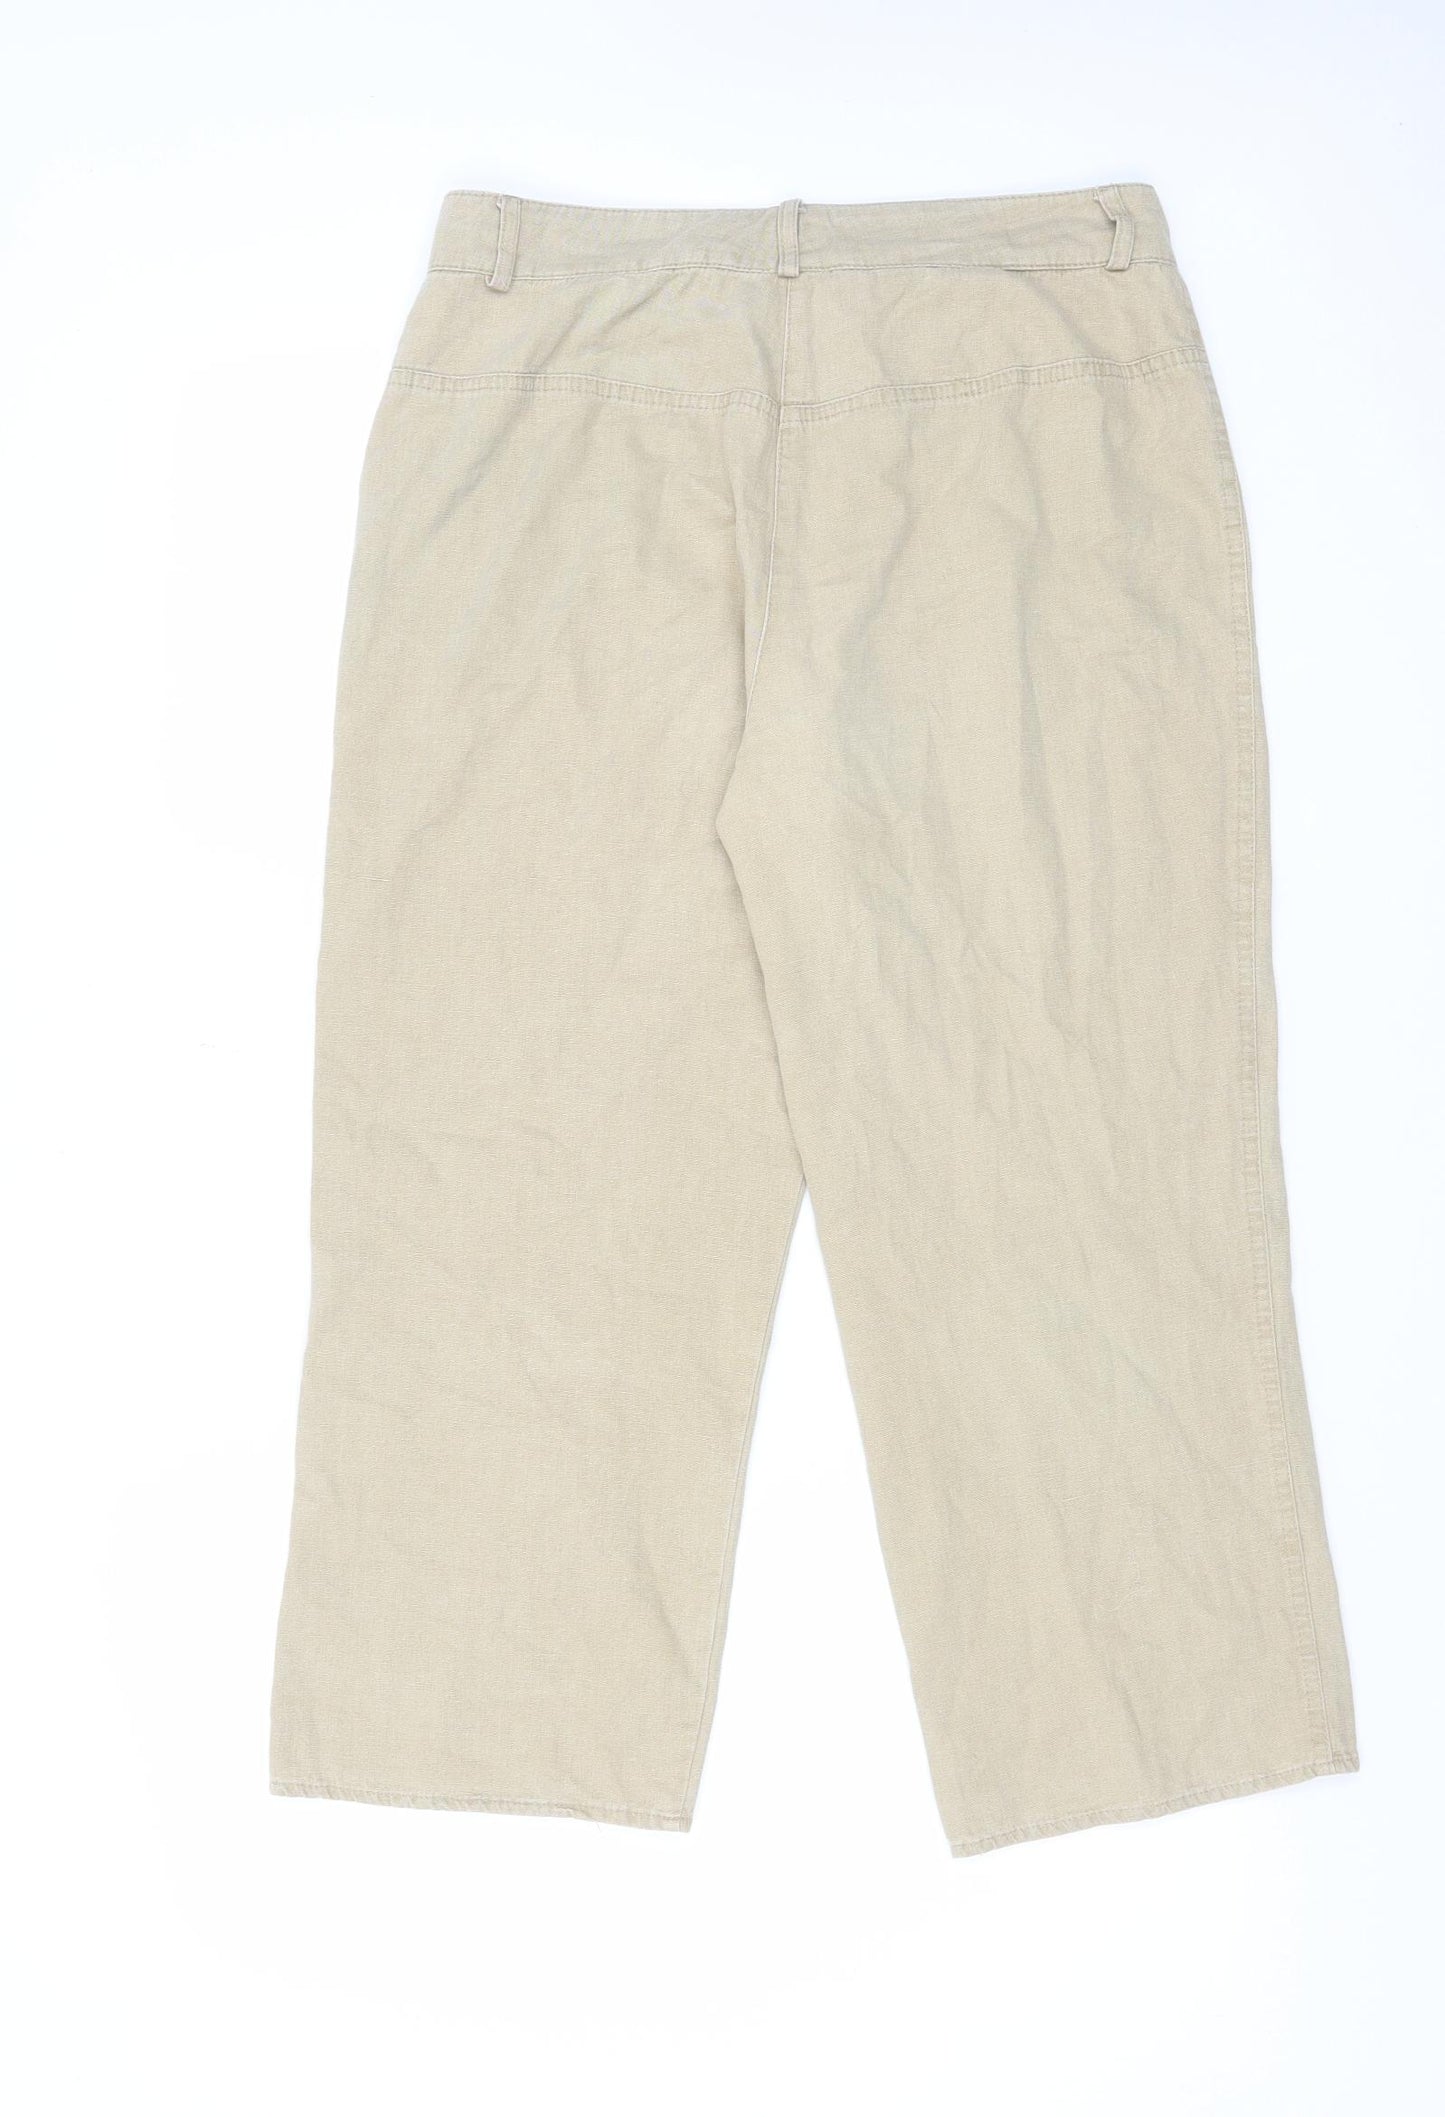 Steilmann Womens Beige Cotton Cropped Trousers Size 14 L24 in Regular Zip